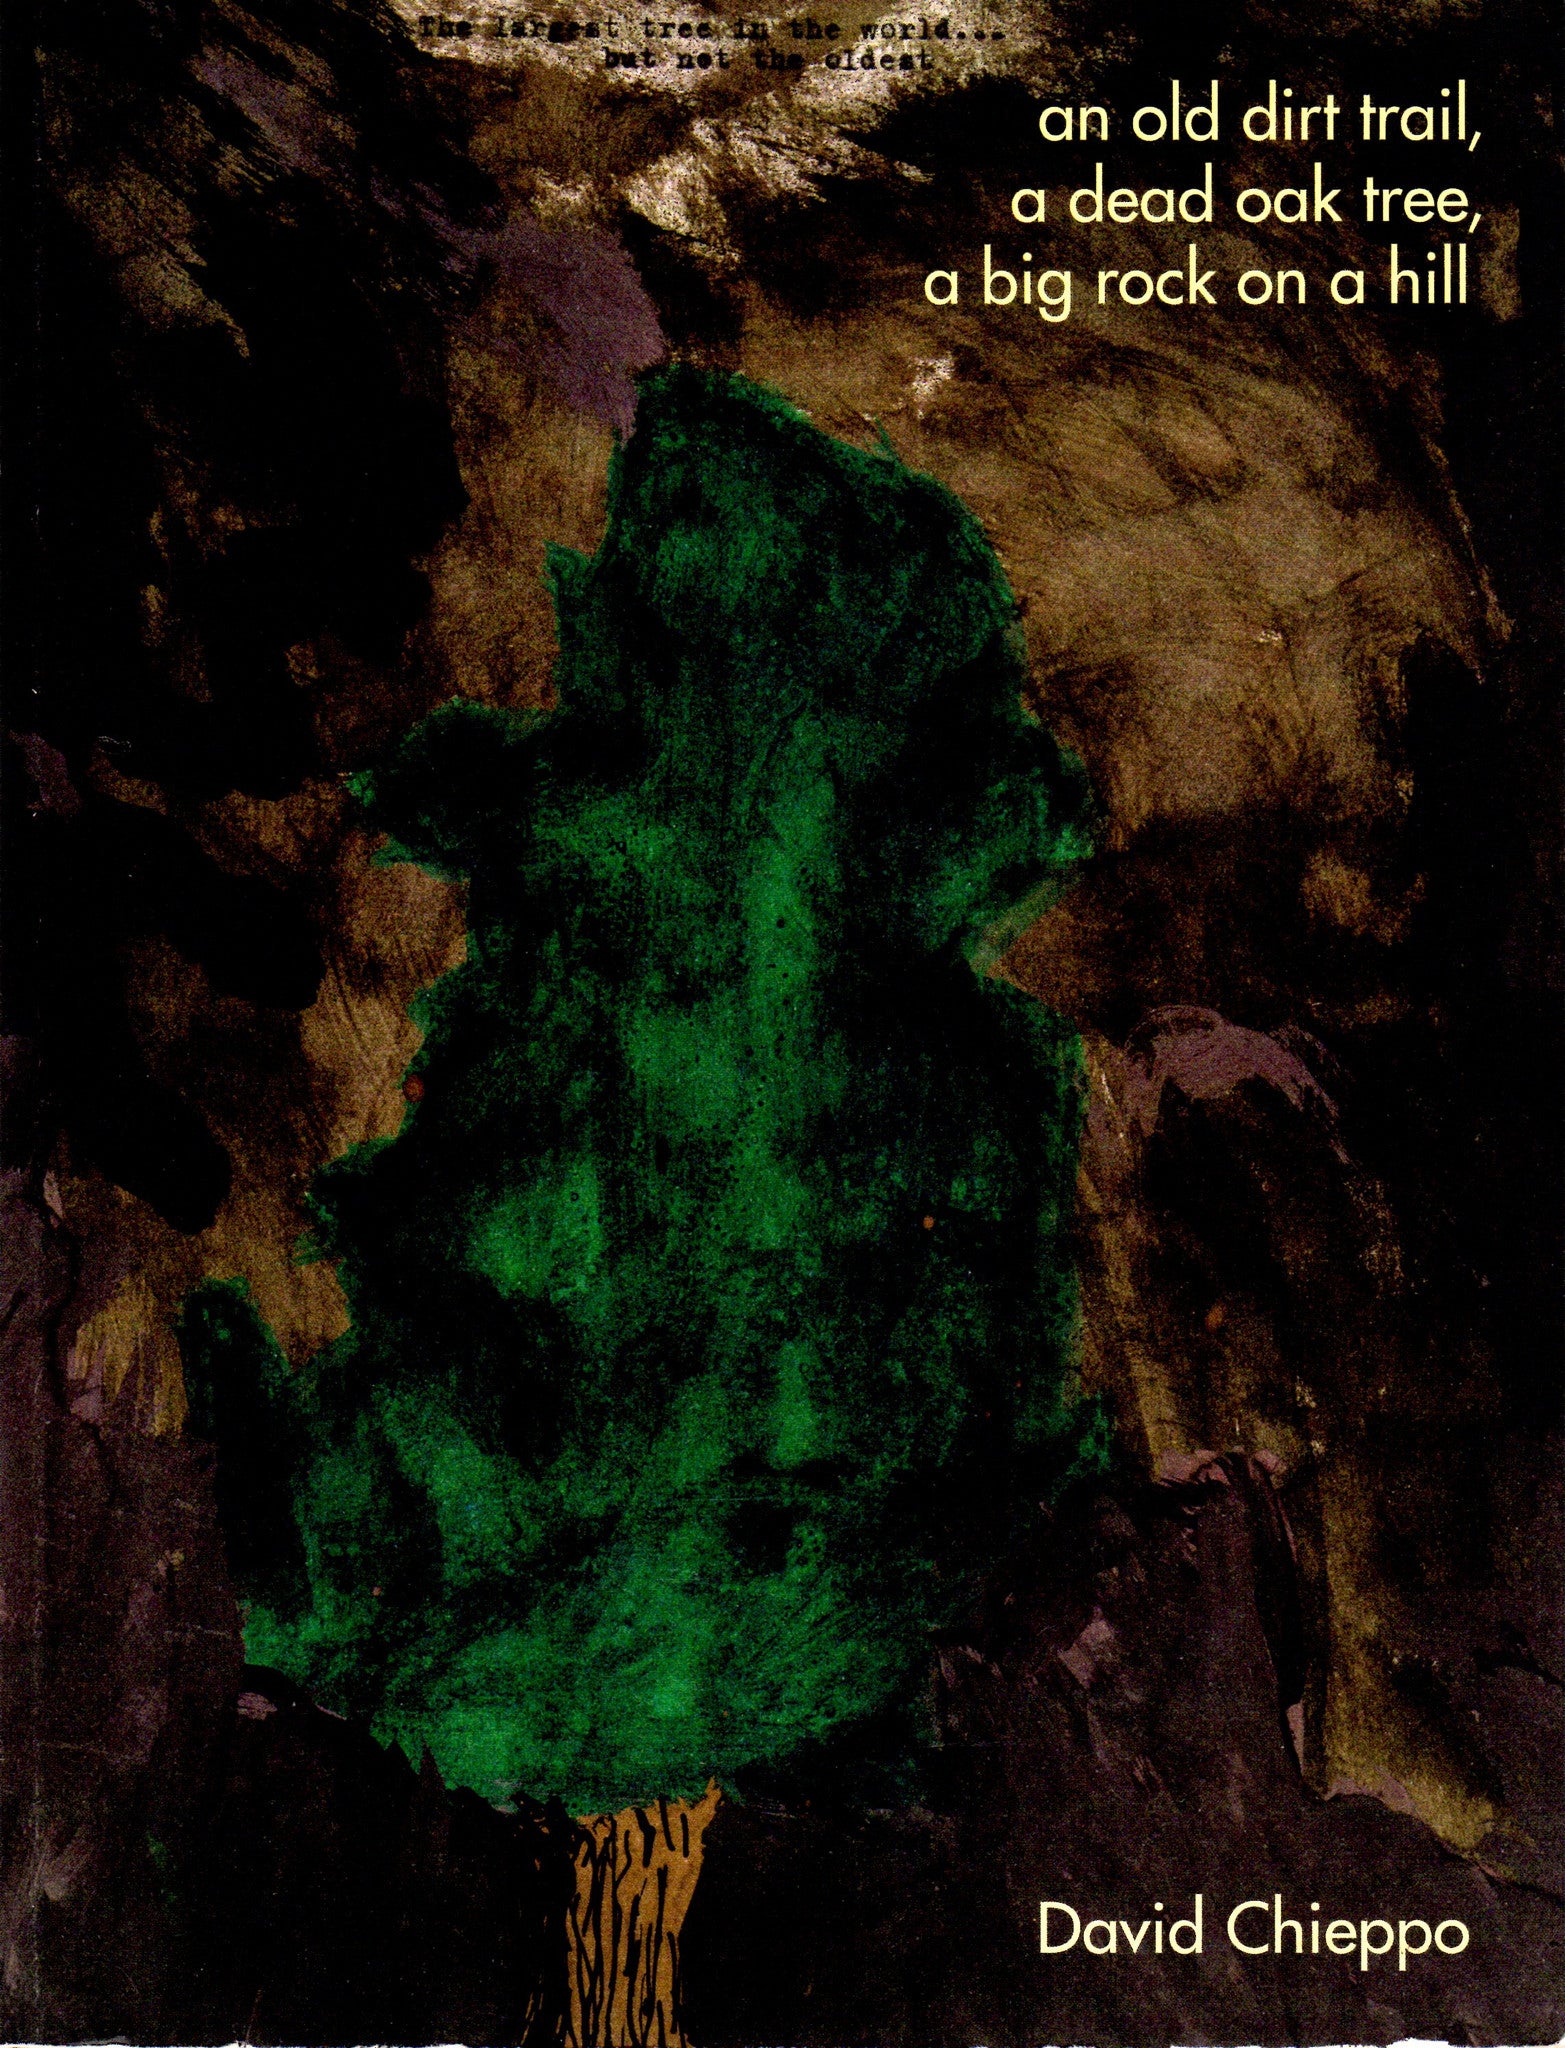 David Chieppo: An old dirt trail, a dead oak tree, a big rock on a hill